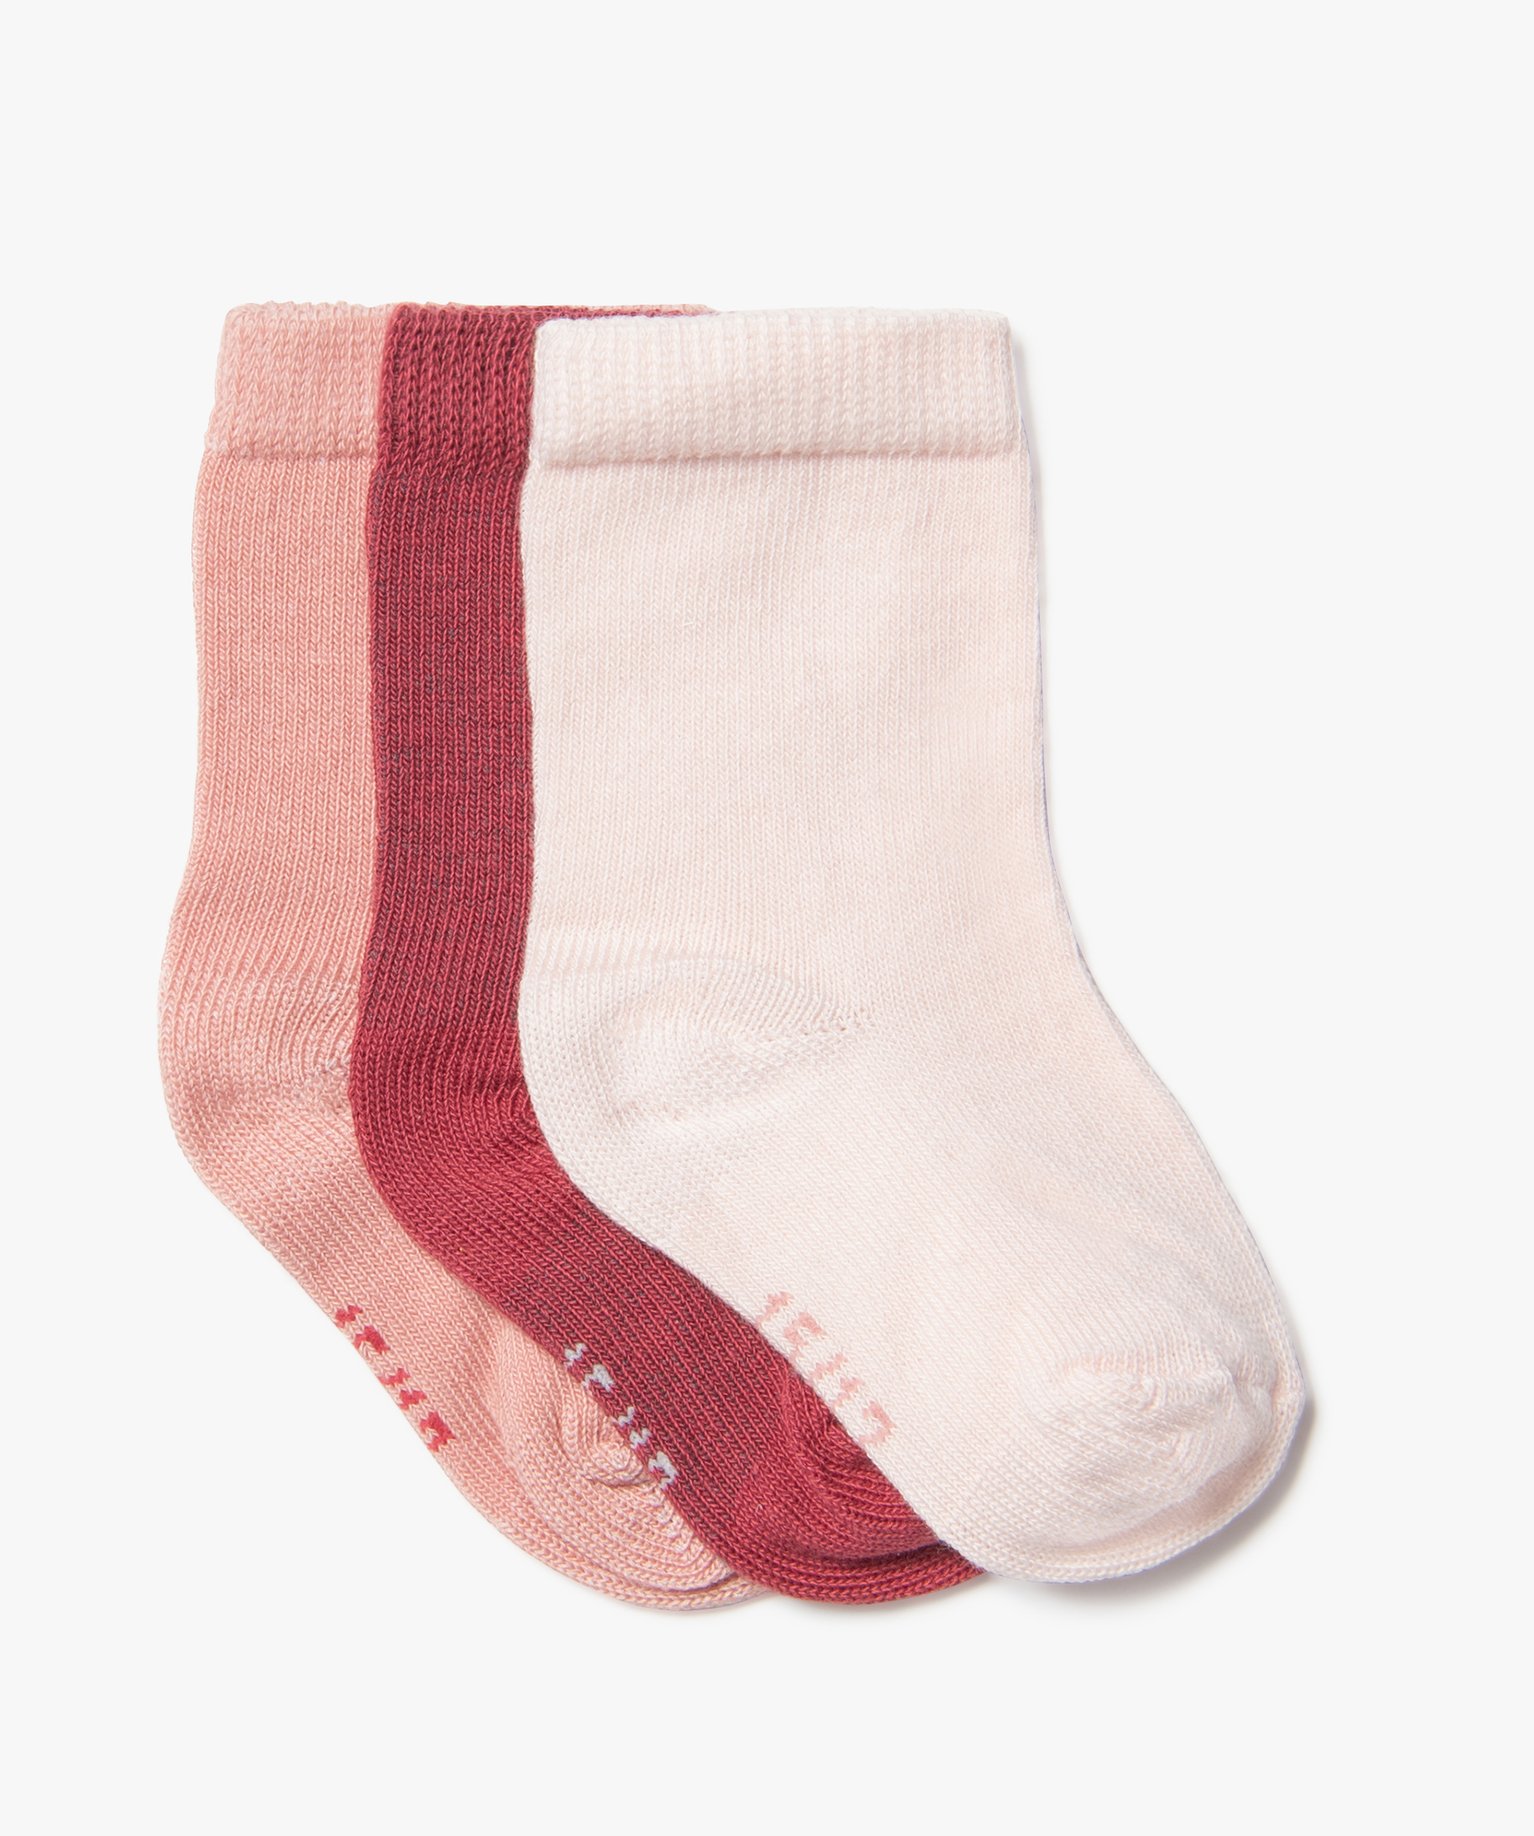 Chaussettes tige haute en coton biologique uni bébé fille (lot de 3) - 21/23 - rose standard - GEMO